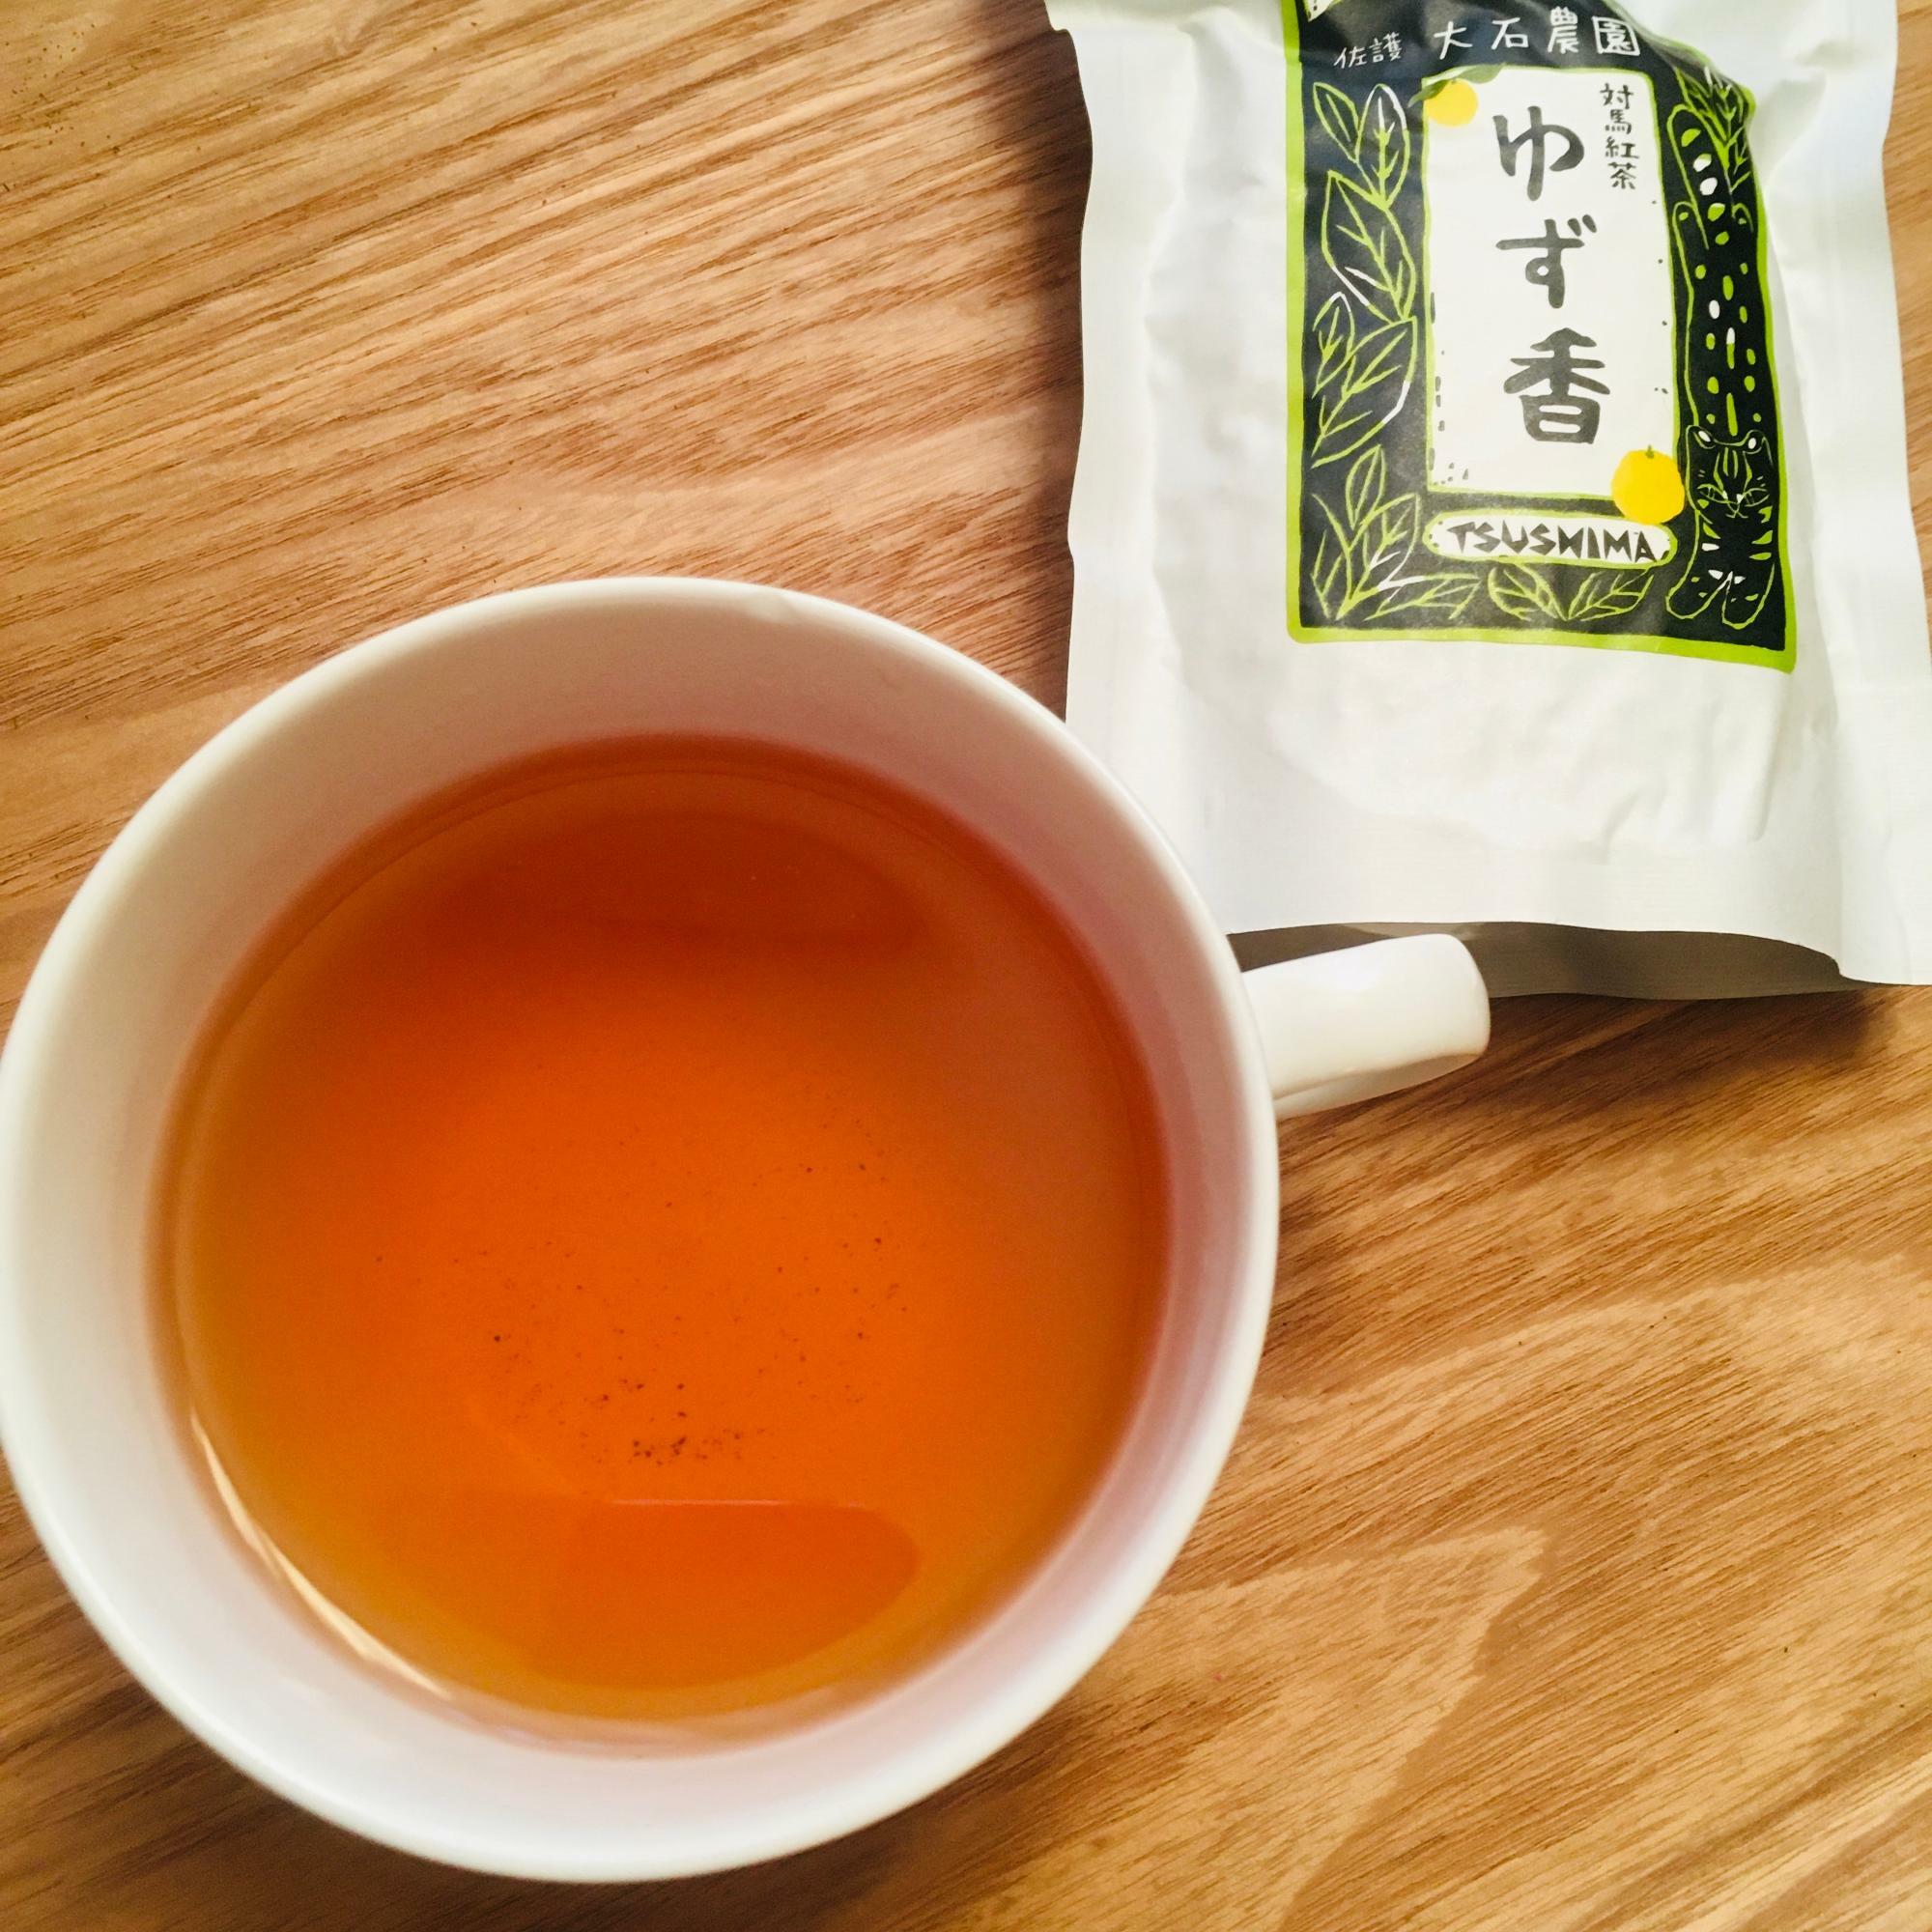 長崎県対馬の「つしま大石農園」さんの対馬産柚子ピール入り紅茶「ゆず香」。柚子も自園で栽培されているそうです。